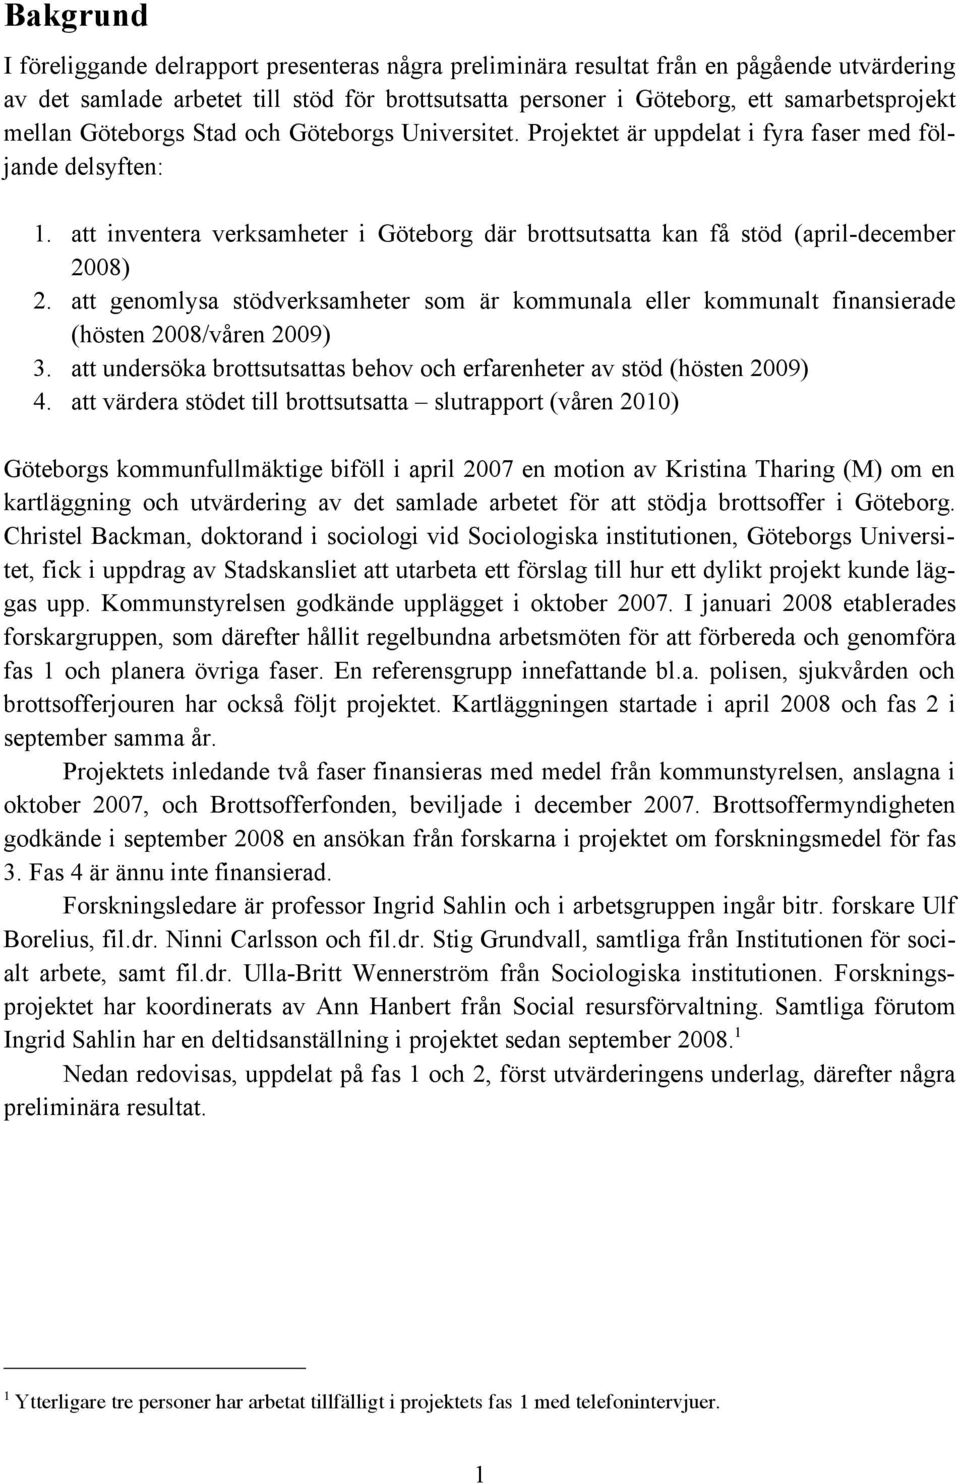 att inventera verksamheter i Göteborg där brottsutsatta kan få stöd (april-december 2008) 2. att genomlysa stödverksamheter som är kommunala eller kommunalt finansierade (hösten 2008/våren 2009) 3.